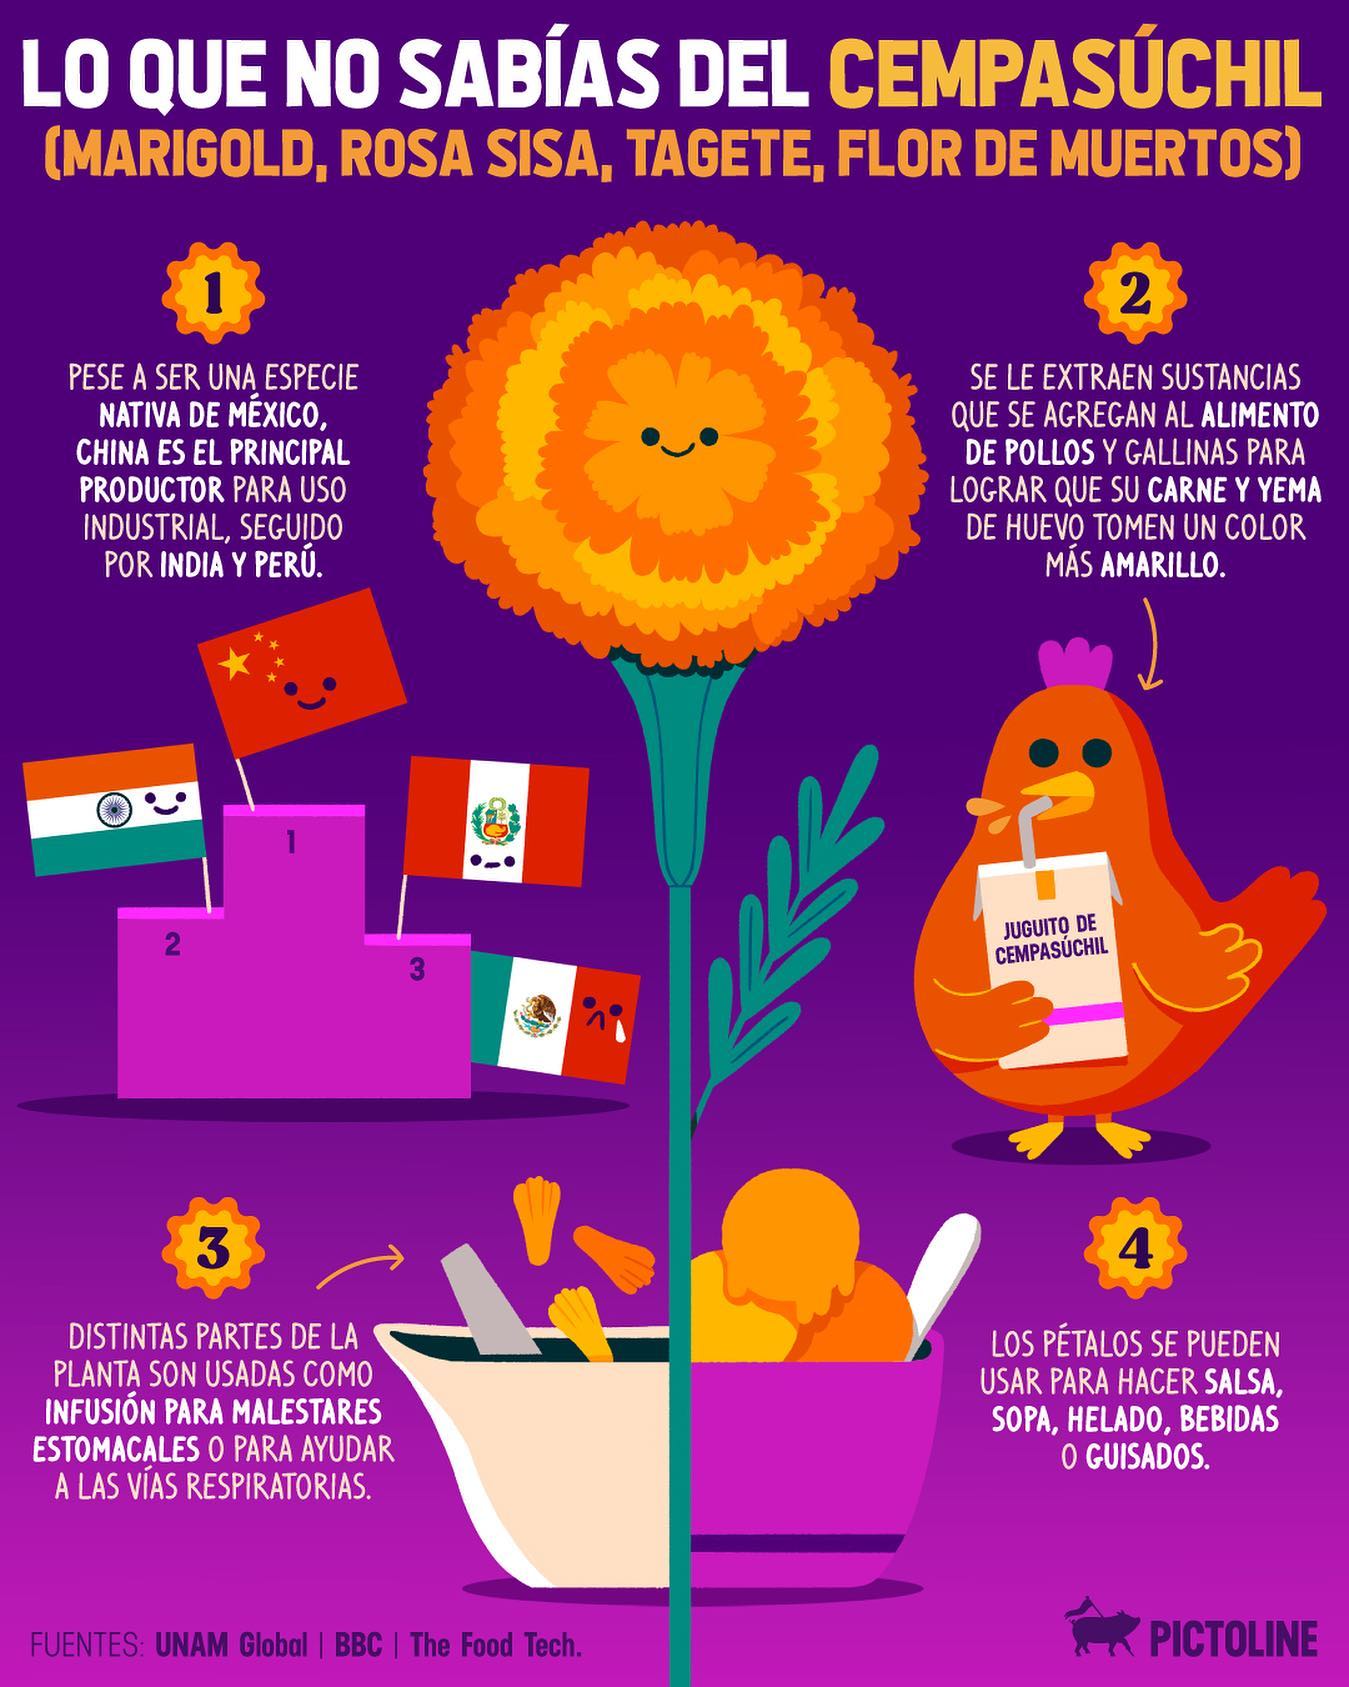 Una flor nativa de México que nunca falta en los altares de #DíaDeMuertos 🏵️🖤 #cempasuchil #tradicionesmexicanas